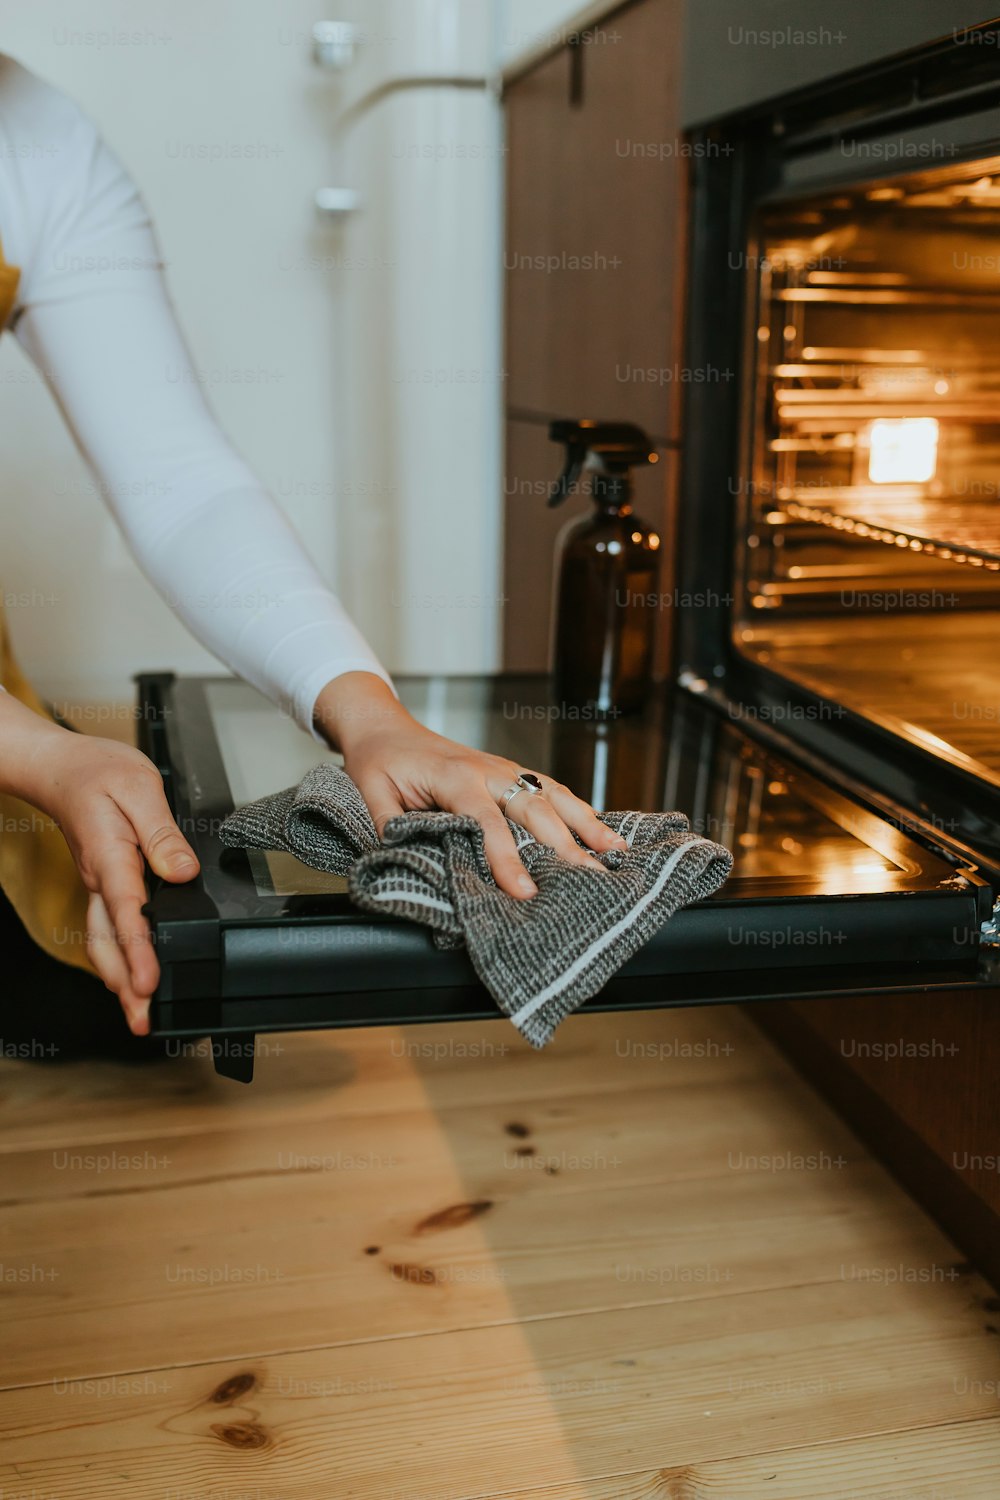 Una donna sta pulendo il forno con un panno